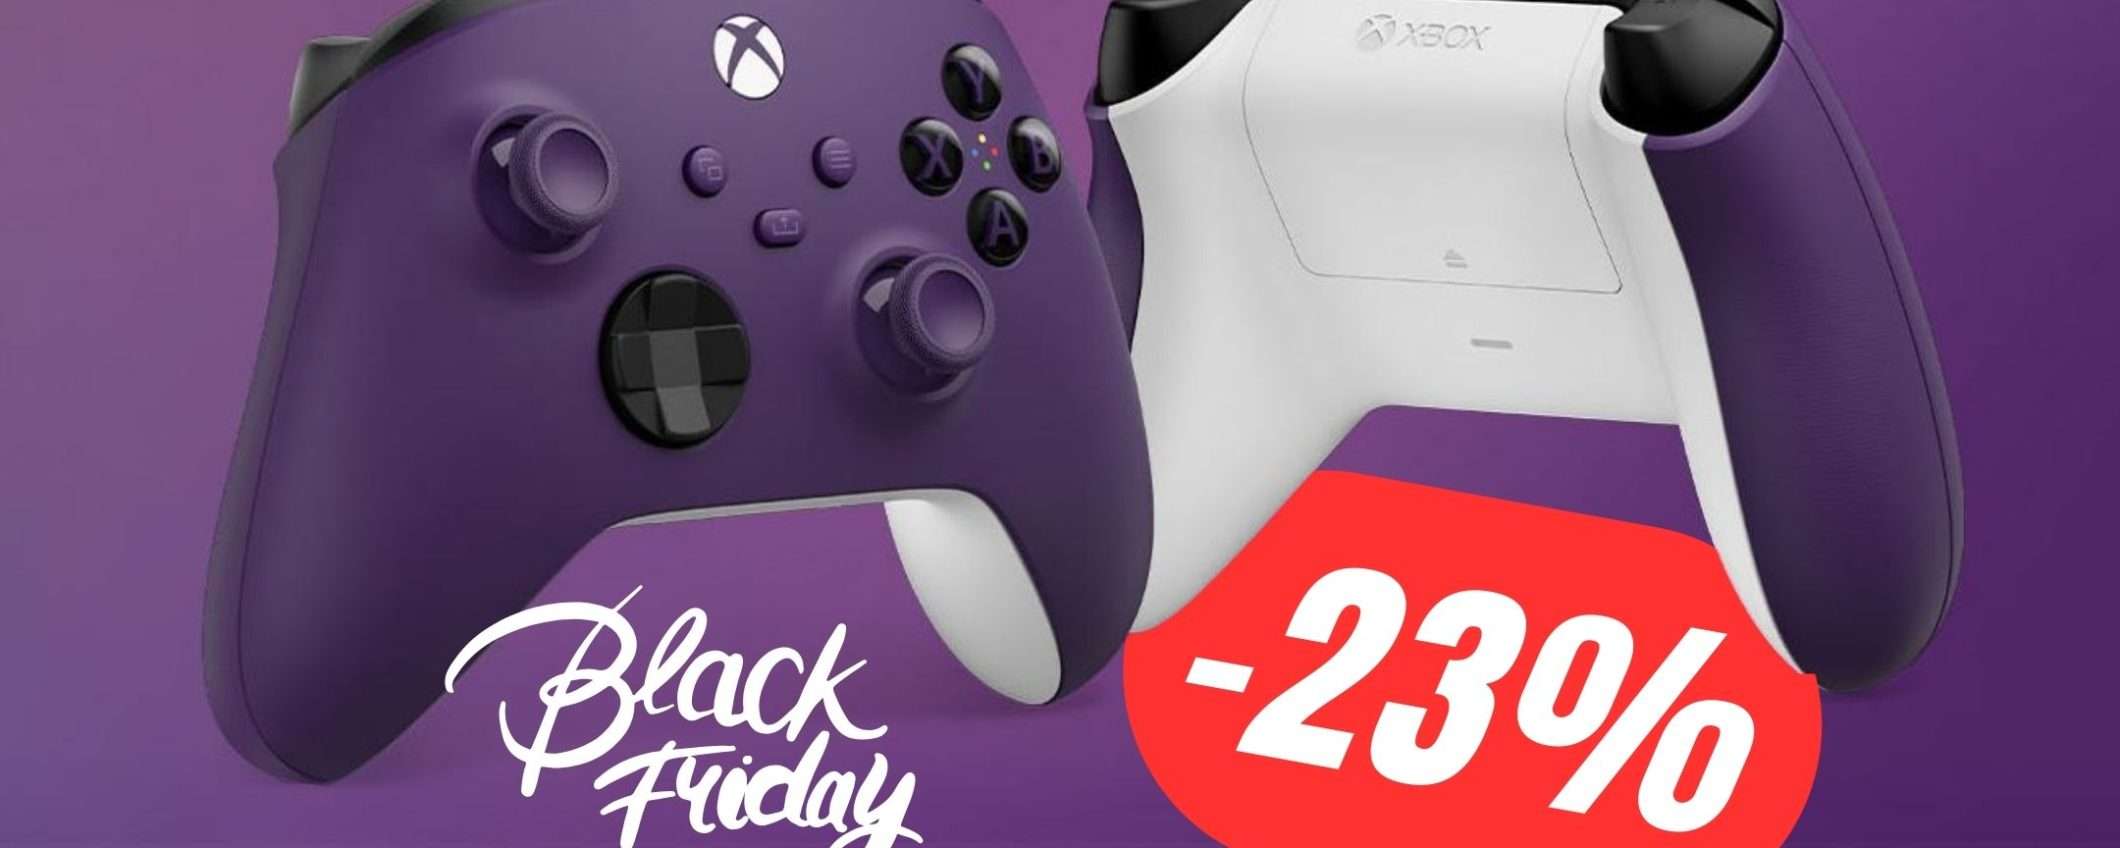 Il Controller per Xbox in colorazione Viola è SCONTATO del -23%!